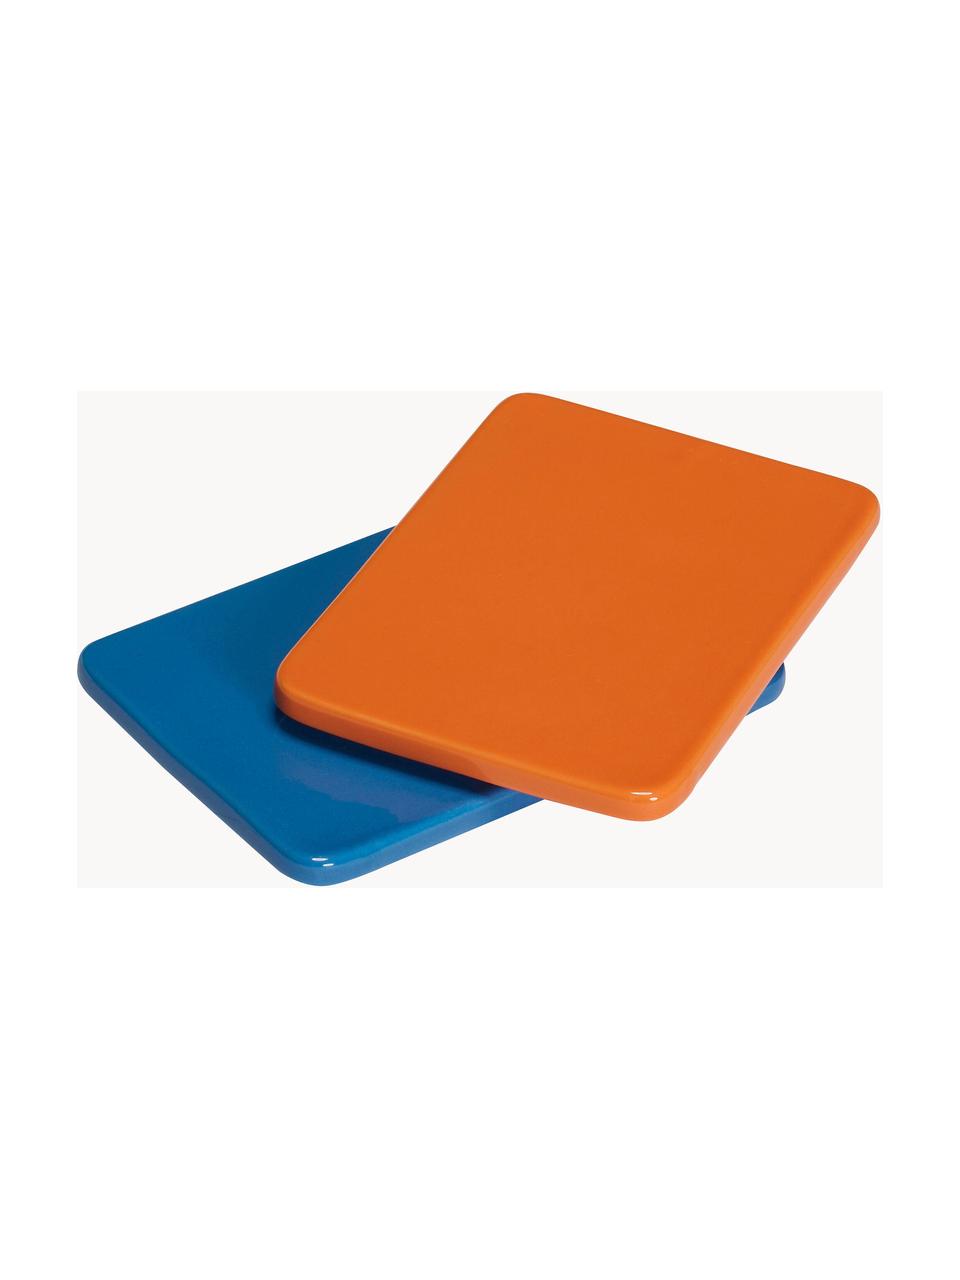 Handgefertigte Servierplatten Amare, 2er-Set, Steinpulver, Blau, Orange, B 15 x T 10 cm